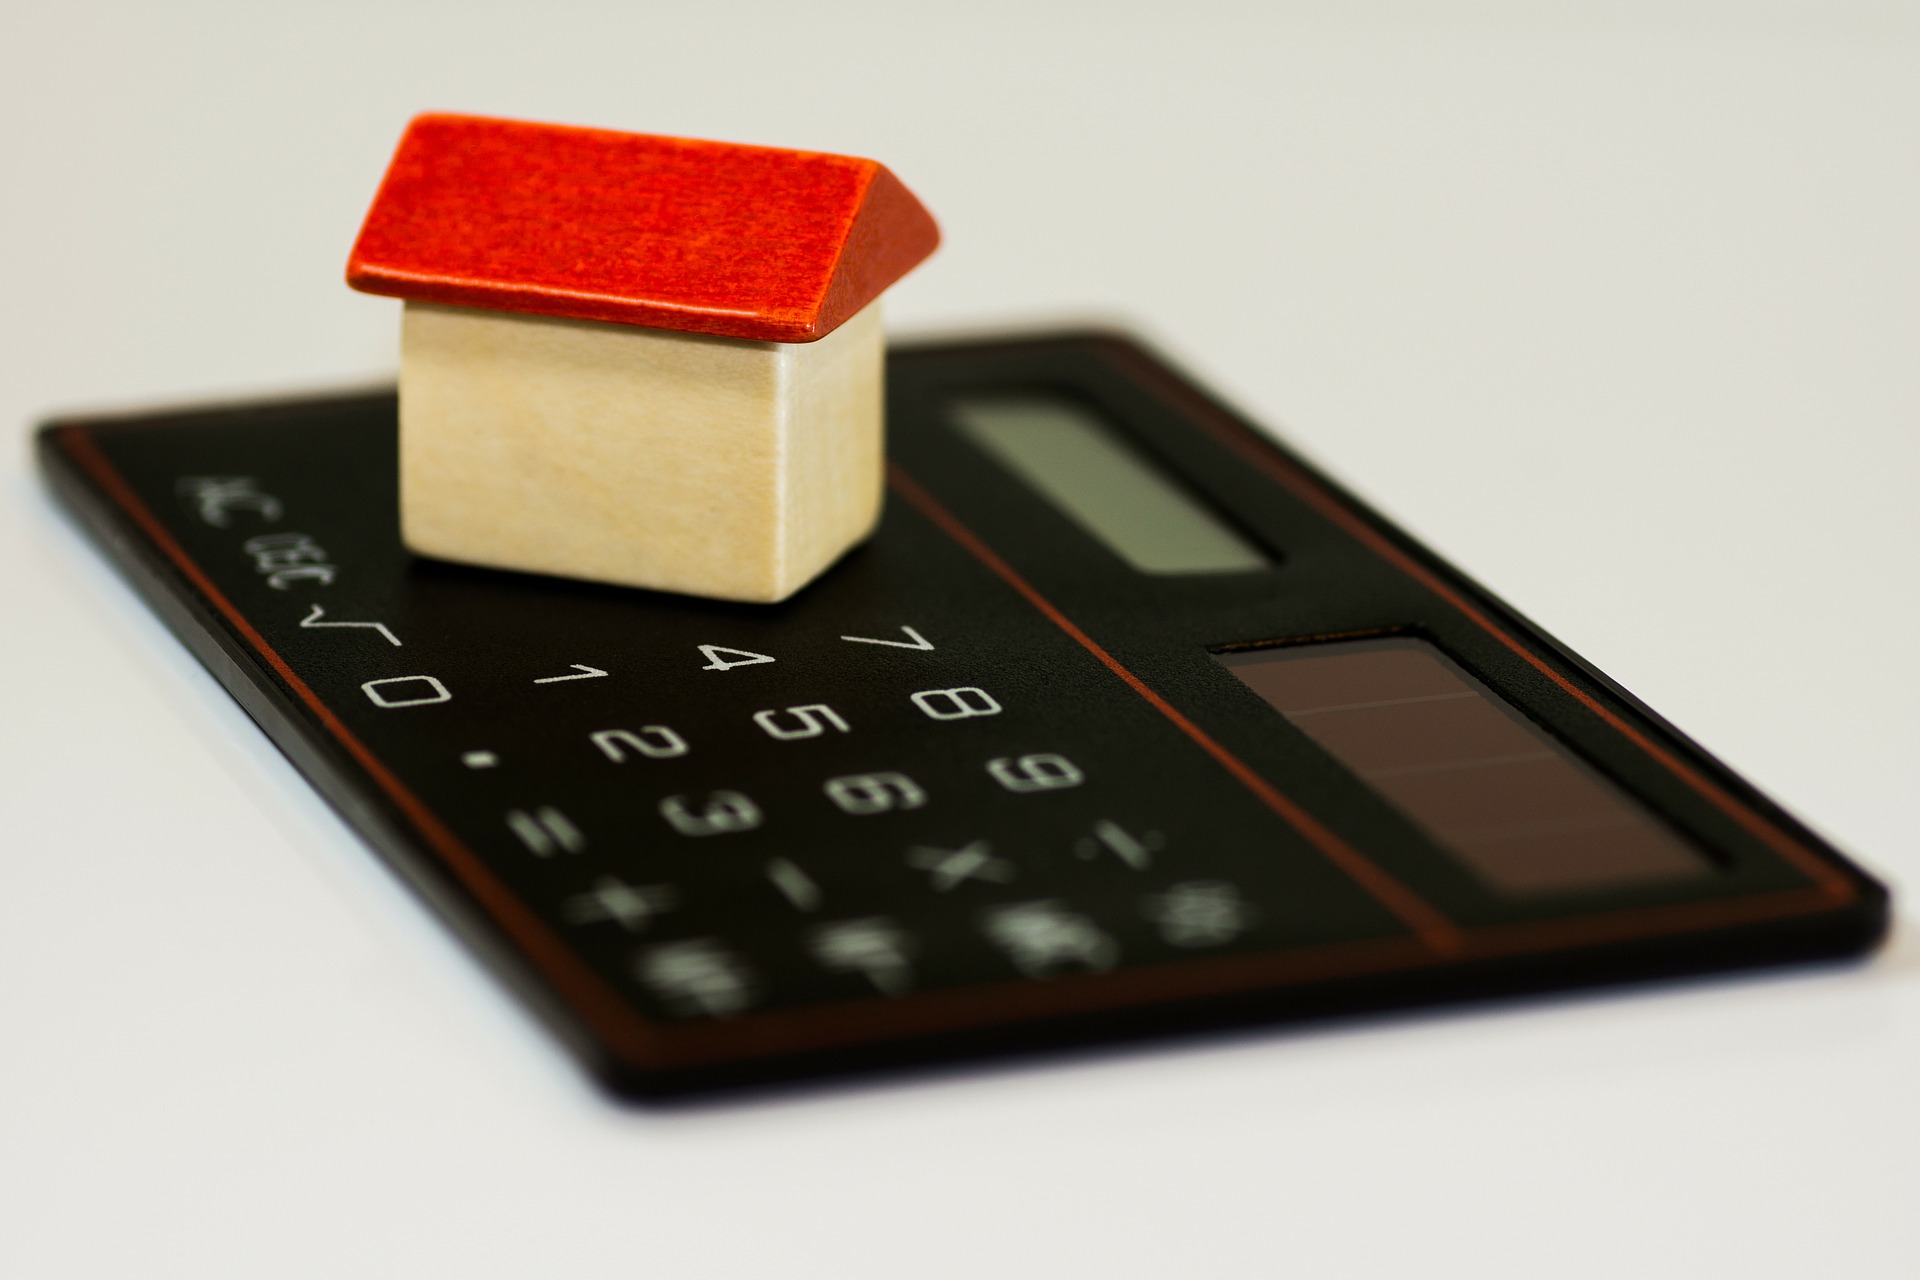 Est-ce que ma cote de crédit sera affectée si je reporte mes paiements hypothécaires?